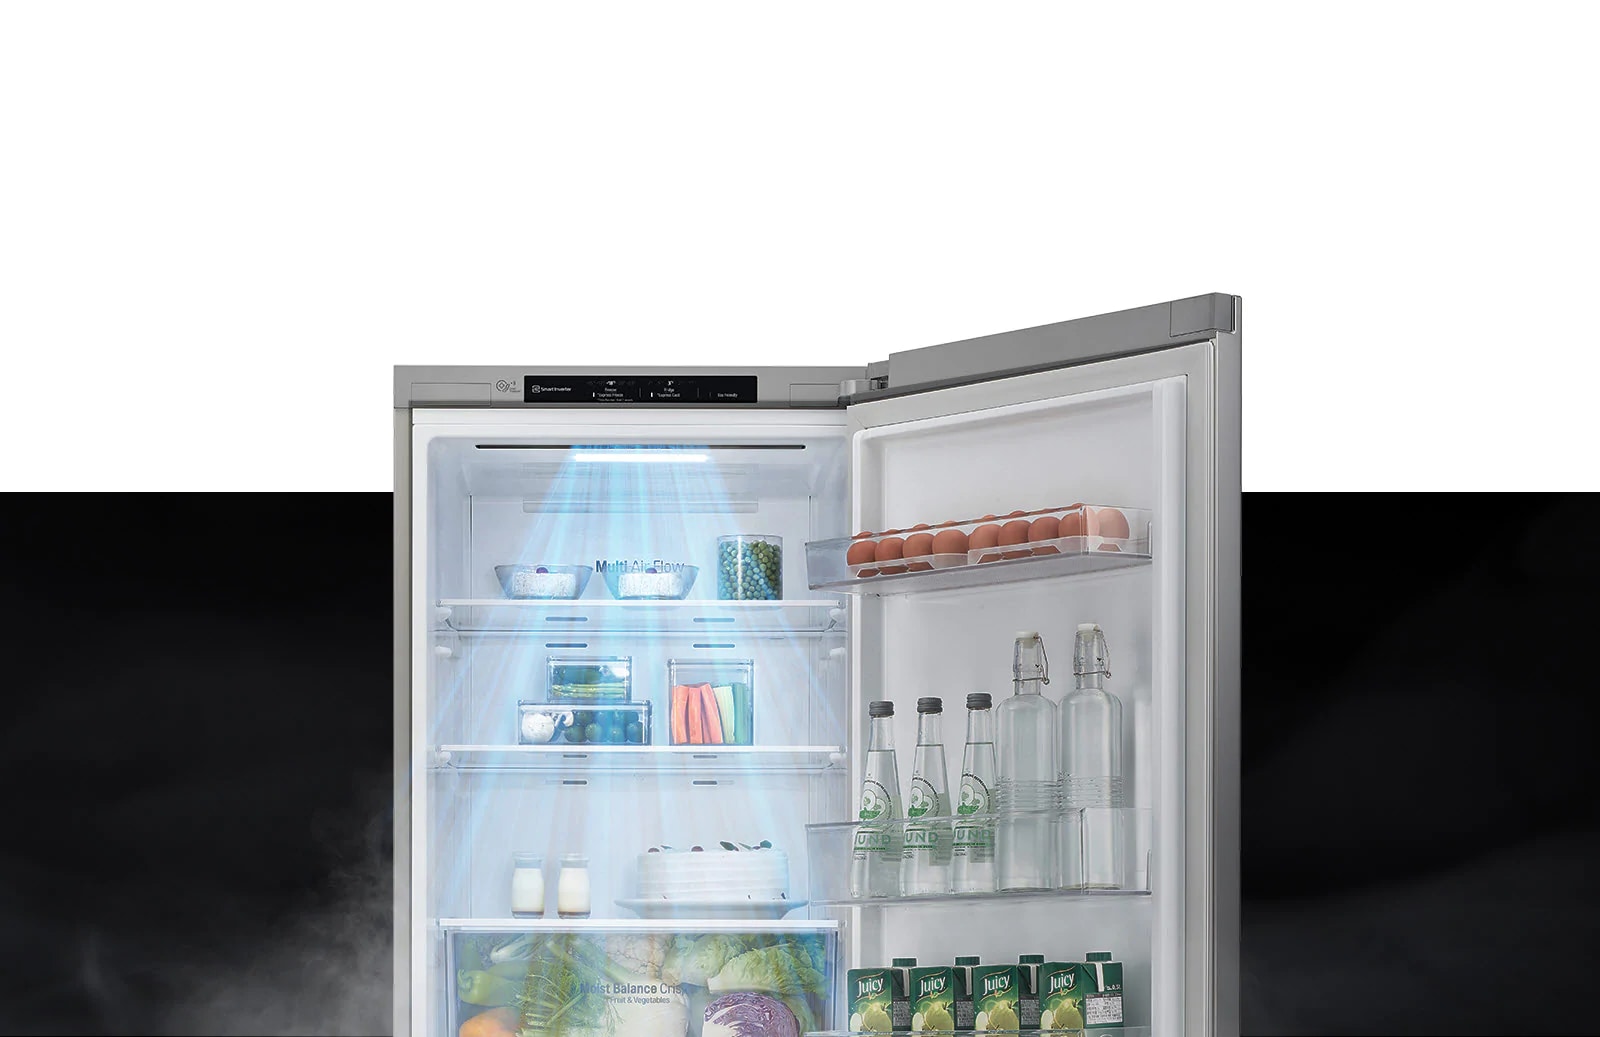 A hűtőszekrény felső része nyitott ajtóval látható. Belül a polcok tele vannak ételekkel és italokkal, amiket a fentről érkező légláram hűt le. 